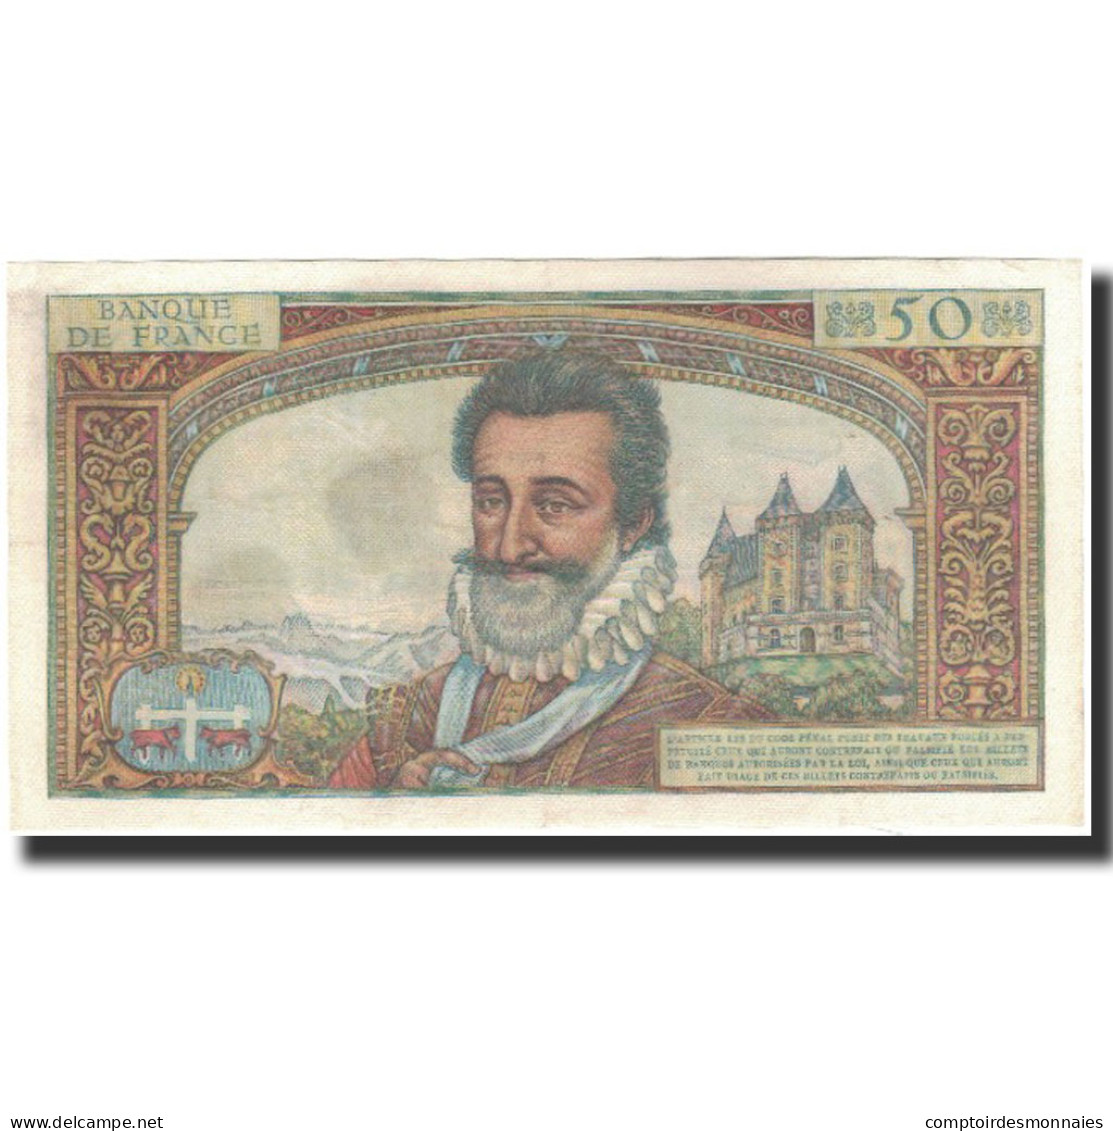 France, 50 Nouveaux Francs, 50 NF 1959-1961 ''Henri IV'', 1959-03-05, SPL - 50 NF 1959-1961 ''Henri IV''